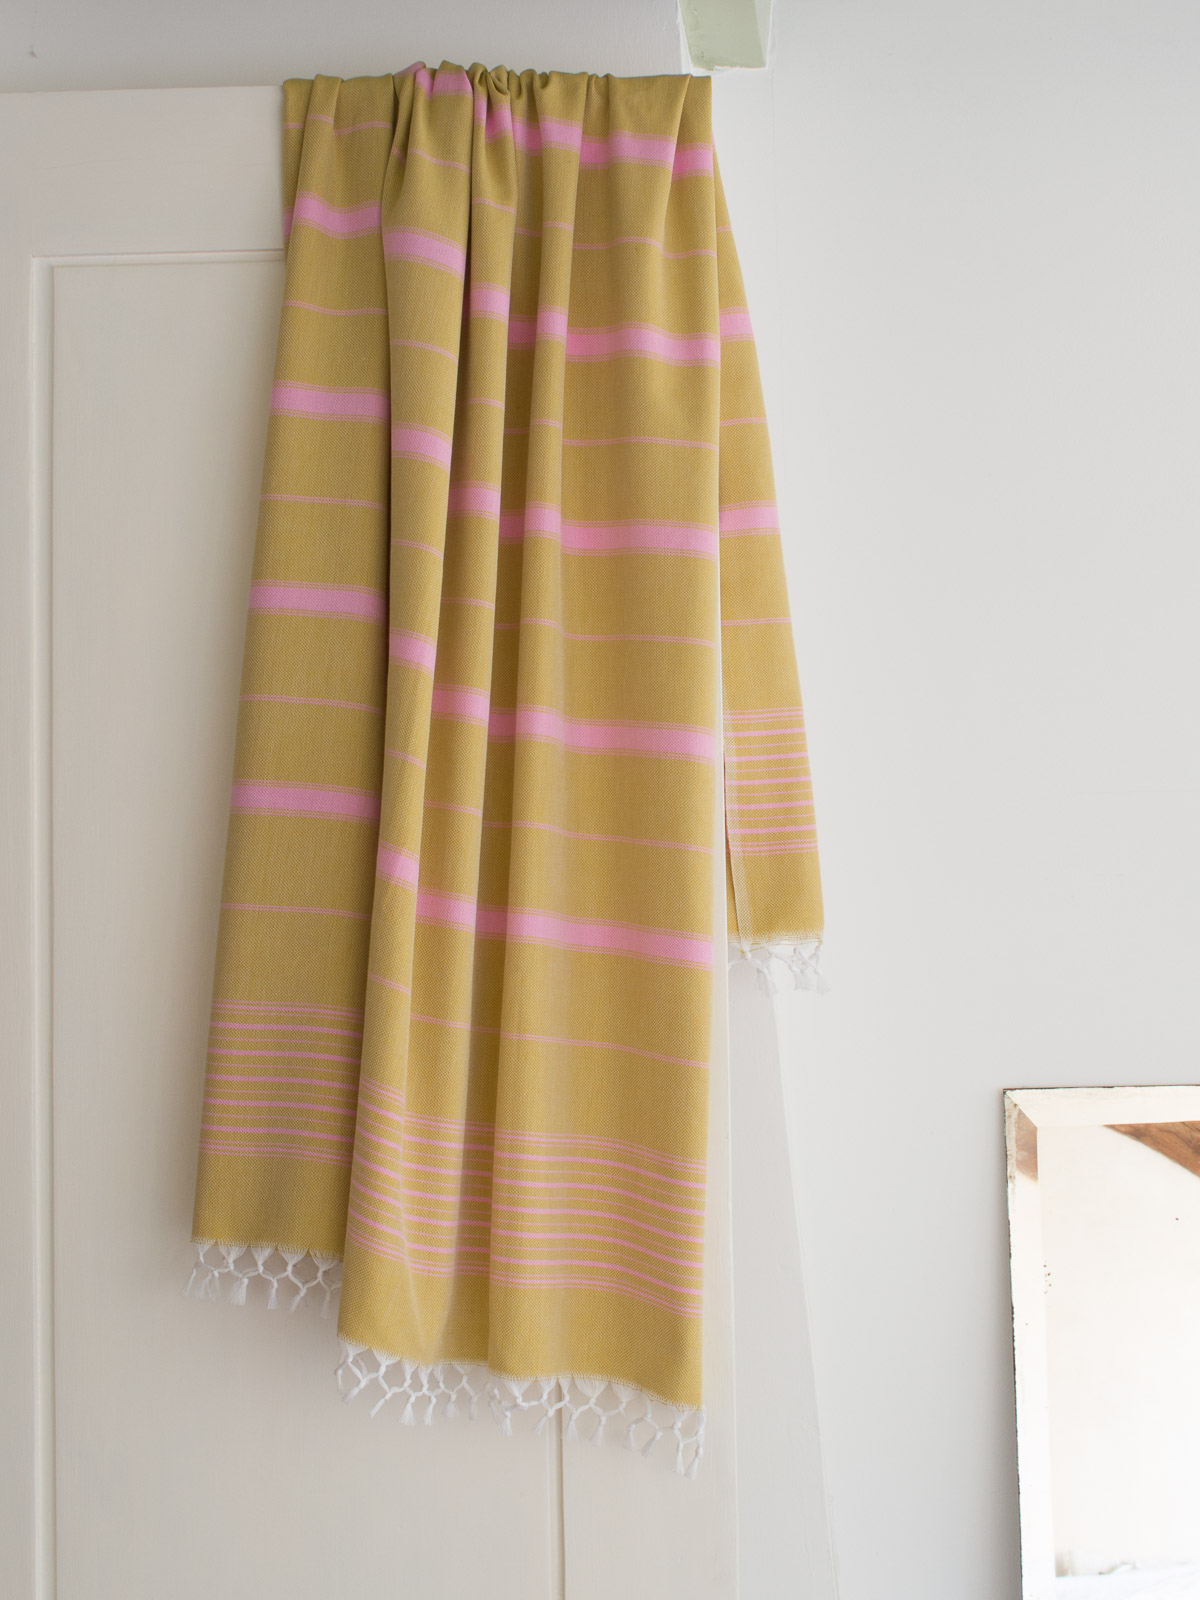 asciugamano hammam giallo senape/rosa 170x100cm